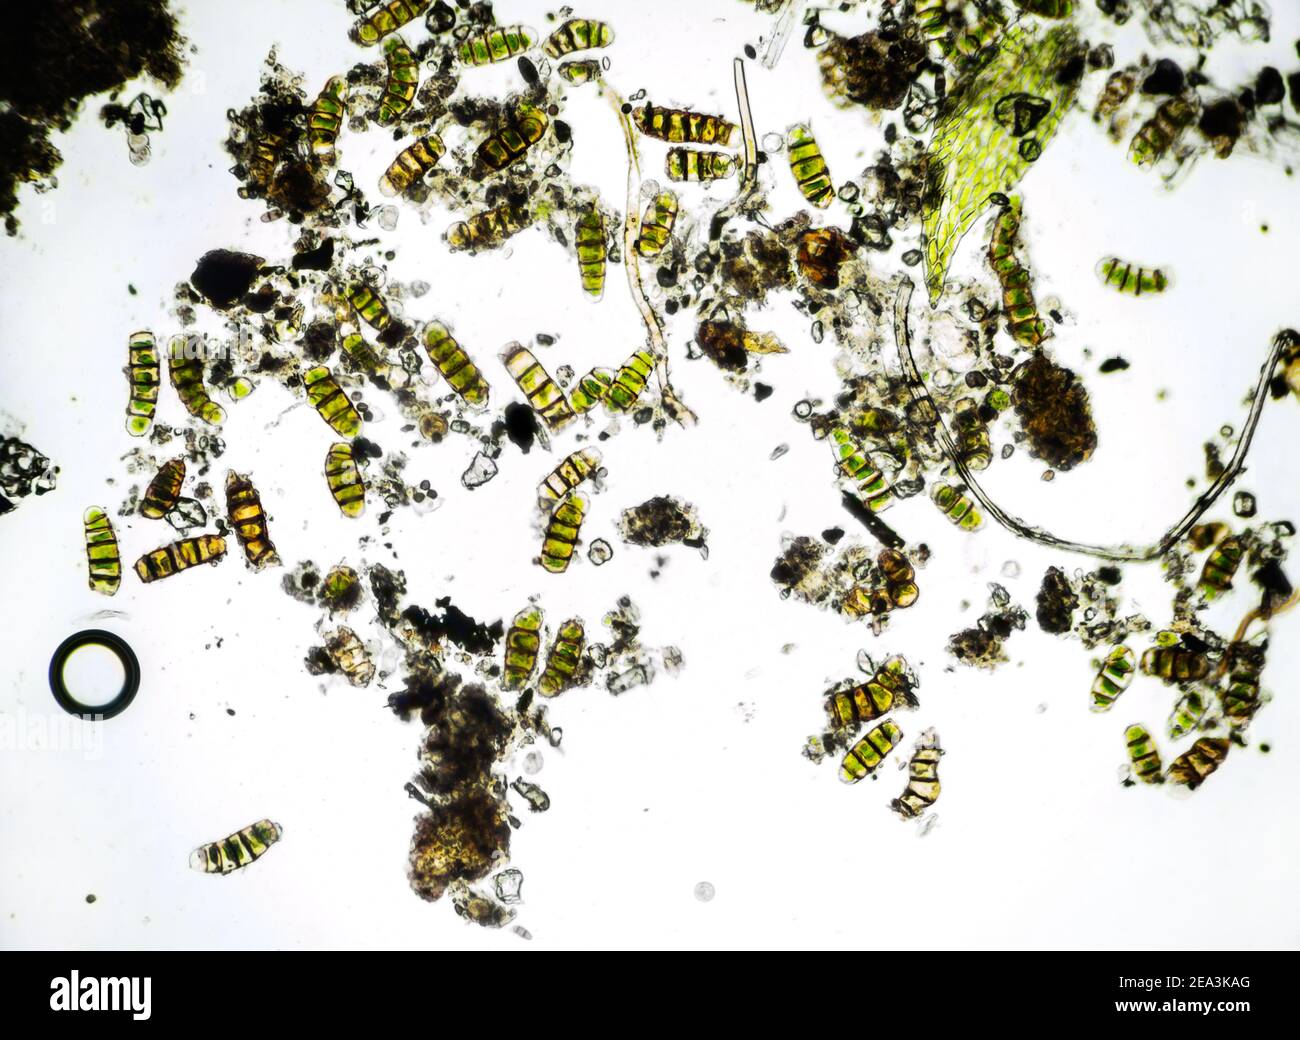 Microalghe al microscopio, campione prelevato dal muschio, ingrandimento 100 volte Foto Stock